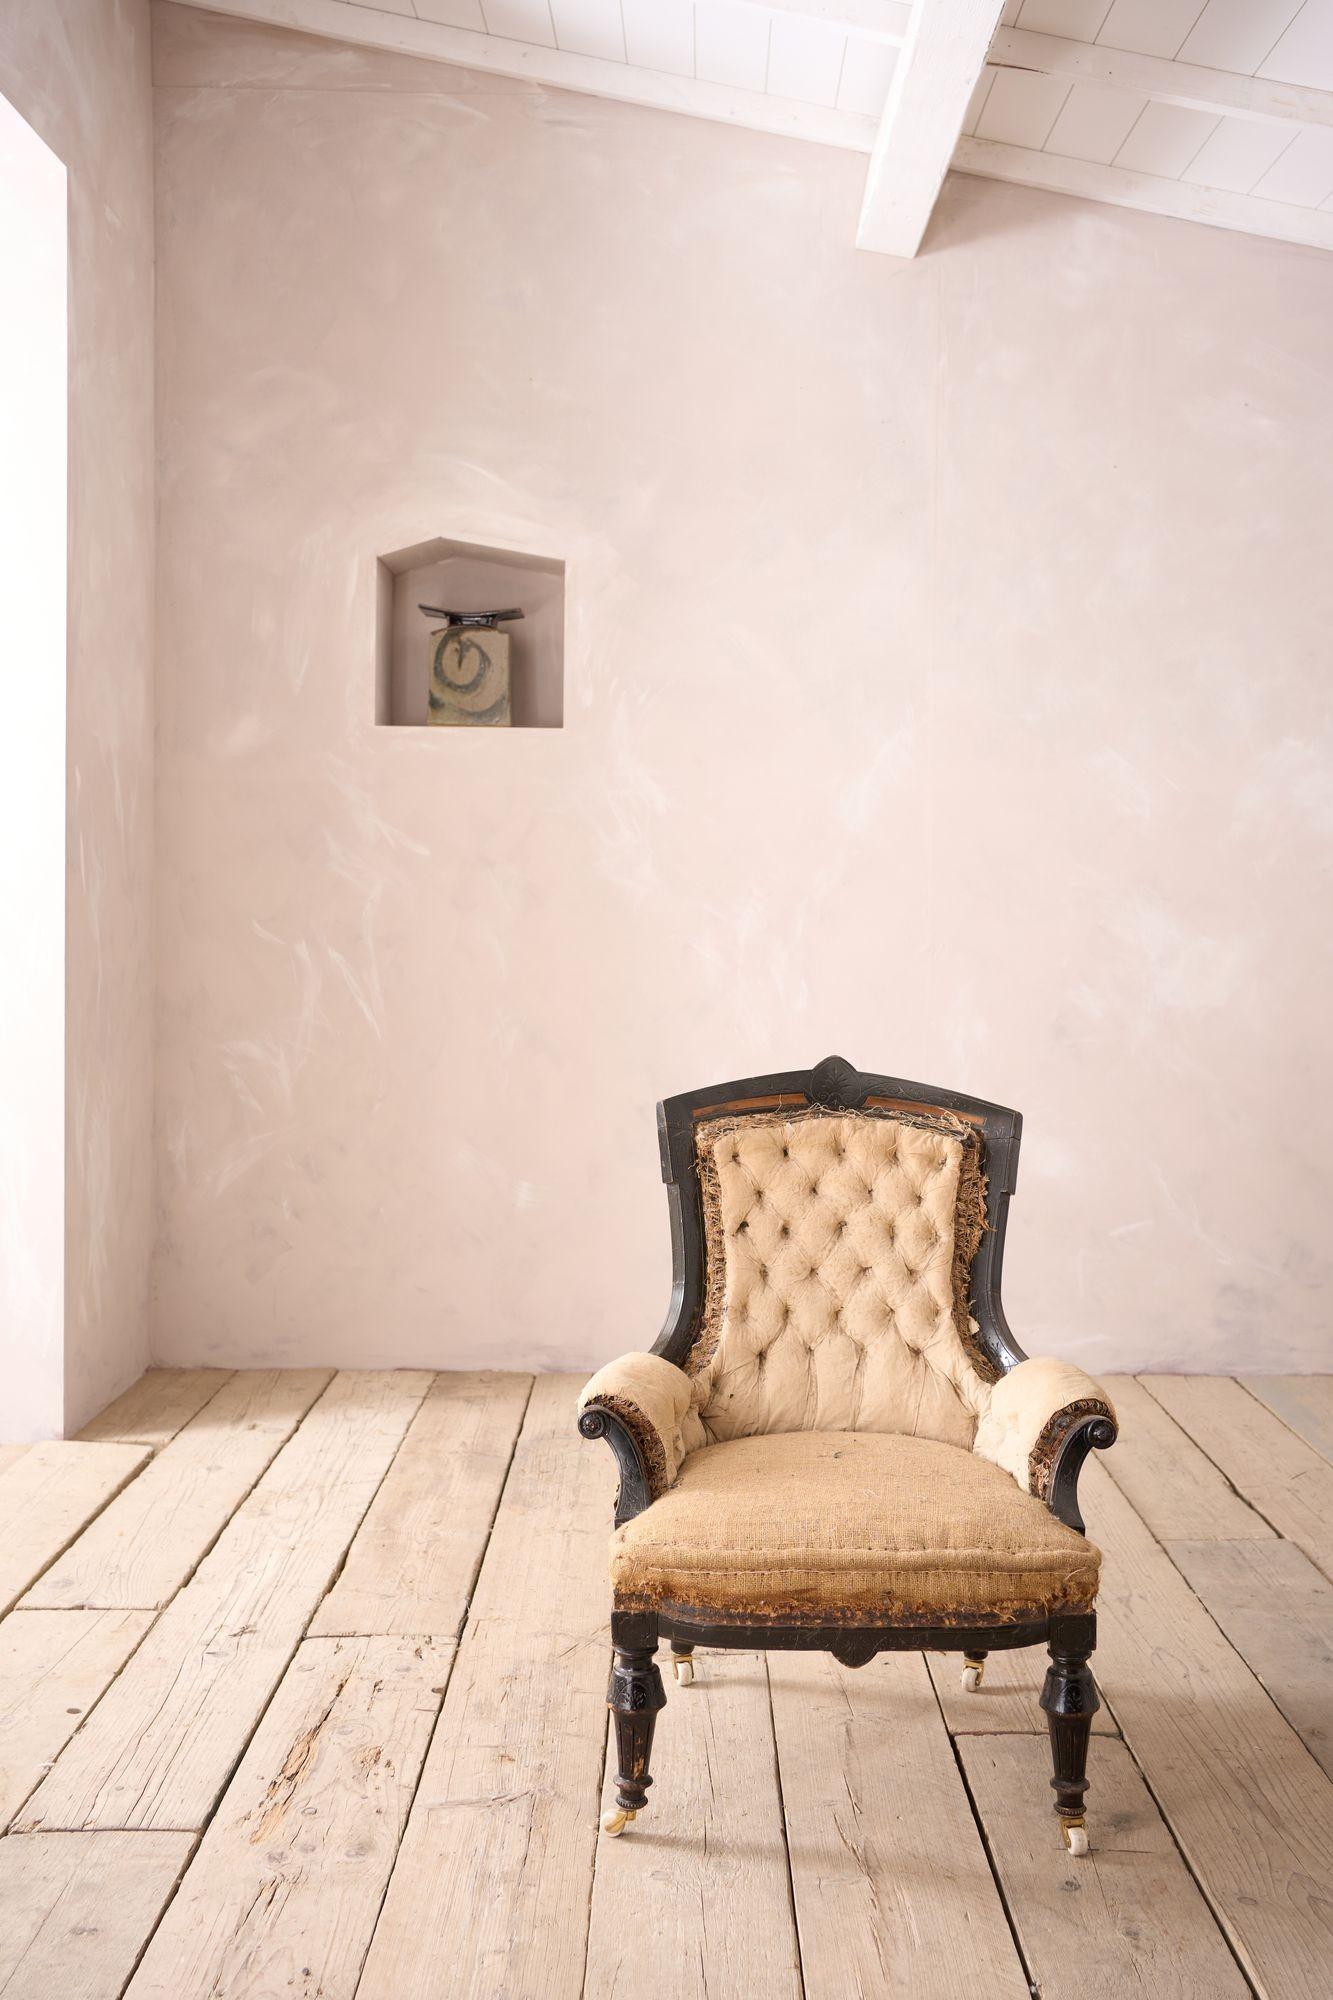 Dies ist ein sehr hochwertiger englischer Sessel aus der Zeit der Ästhetischen Bewegung. Mit original geschnitztem ebonisiertem Rahmen mit Details aus Amboyna-Holz an der Oberseite. Toller Look für eine Zimmerecke und dazu noch total originelle